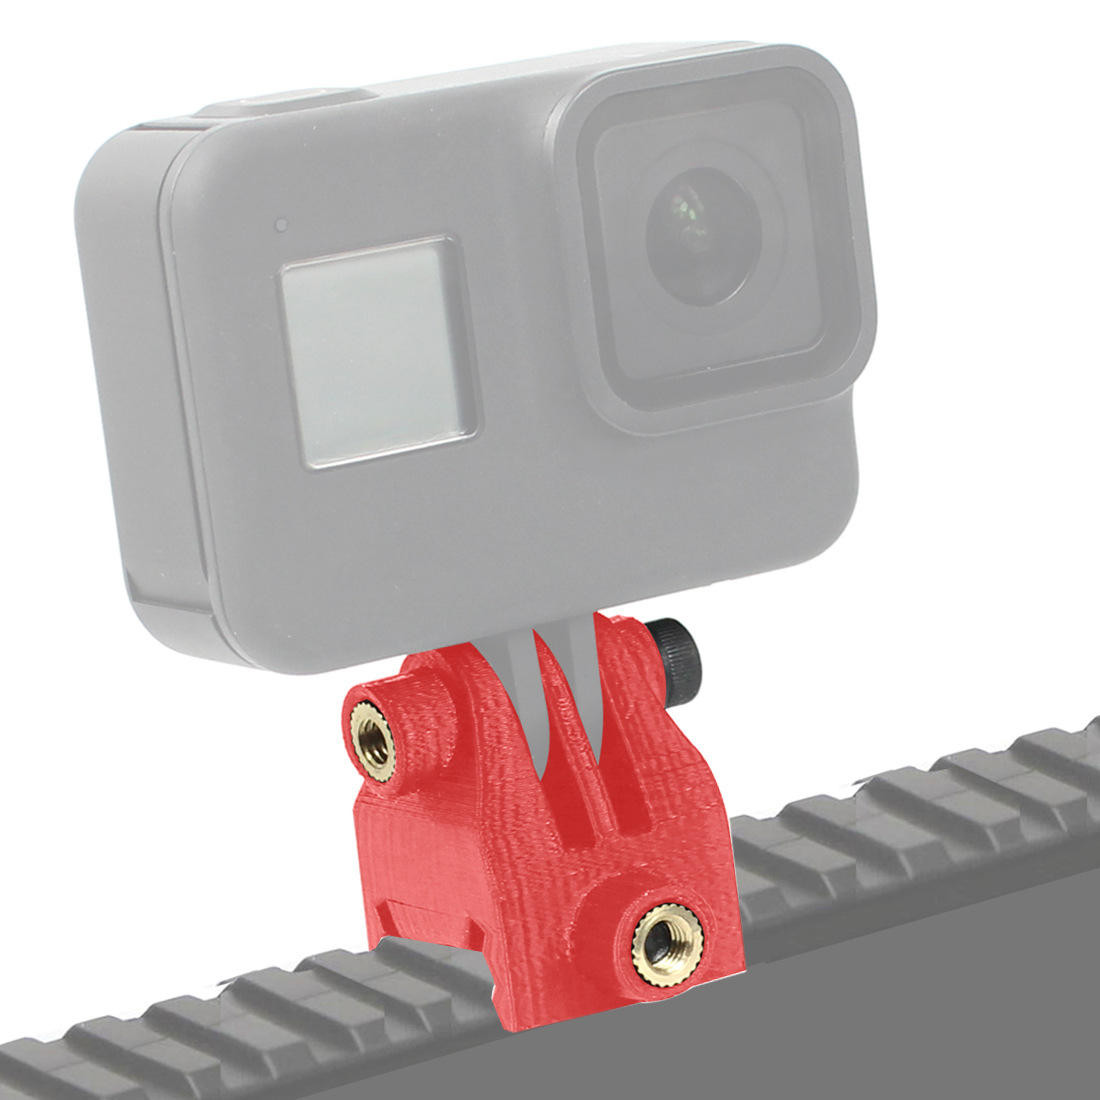 Voor GOPRO / EKEN Actie Camera Mount Gids Lead Rail Adapter Slide Way Clamp Holder Koude Schoen Base